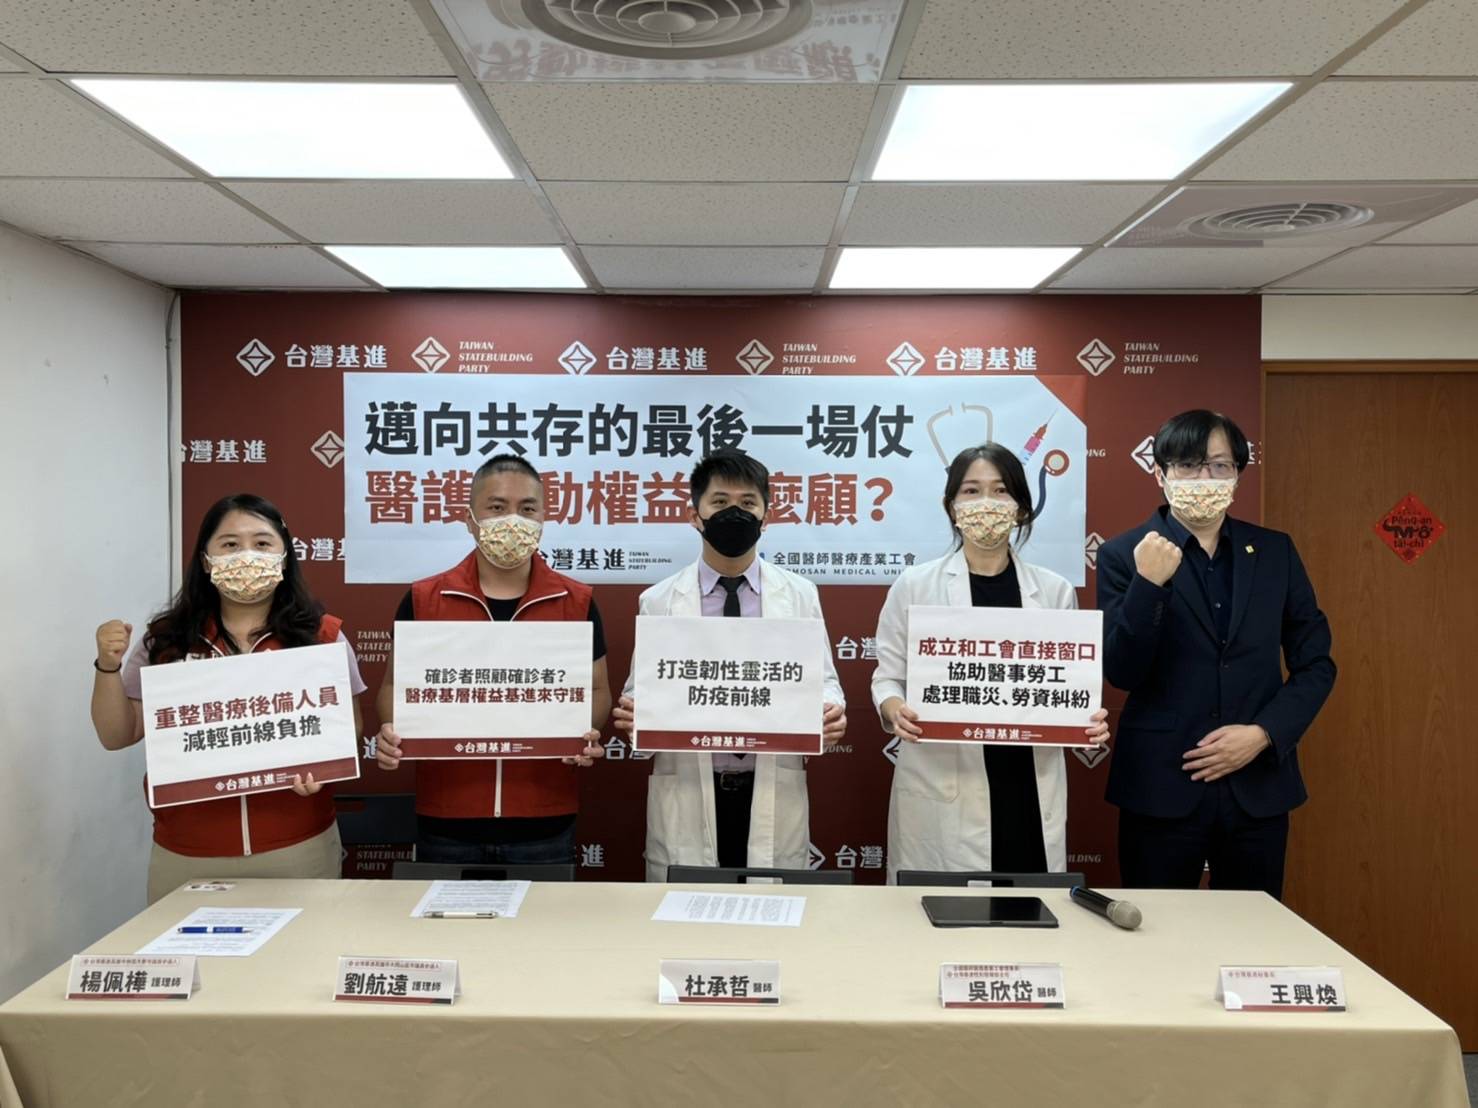 台灣基進、全國醫師醫療產業工會今在黨政辦公室召開「邁向共存的最後一場仗 醫護勞動權益怎麼顧？」記者會。   圖:台灣基進提供